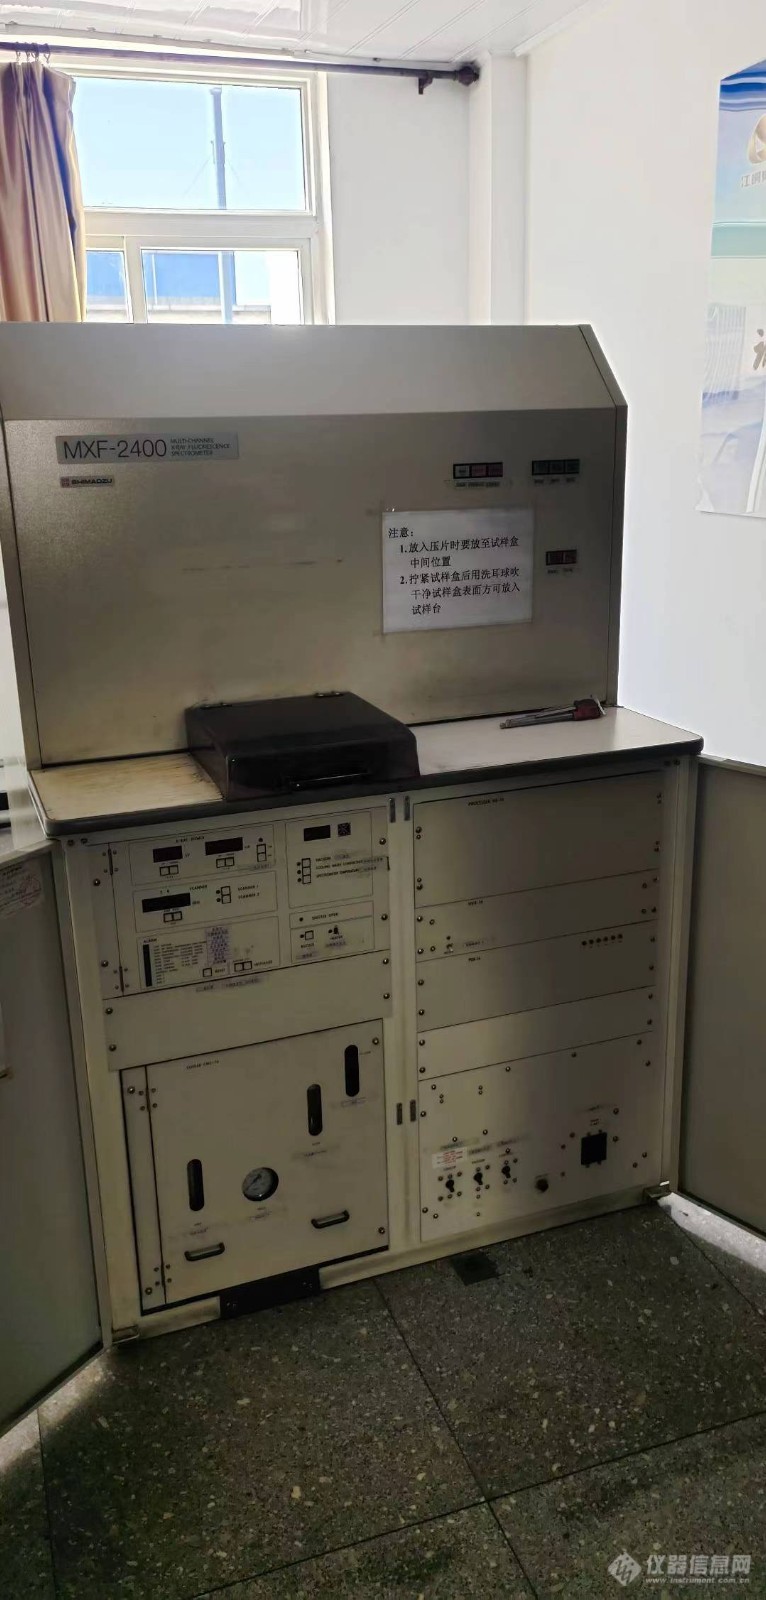 岛津MXF-2400型多道X射线荧光光谱仪专业维修保养调试